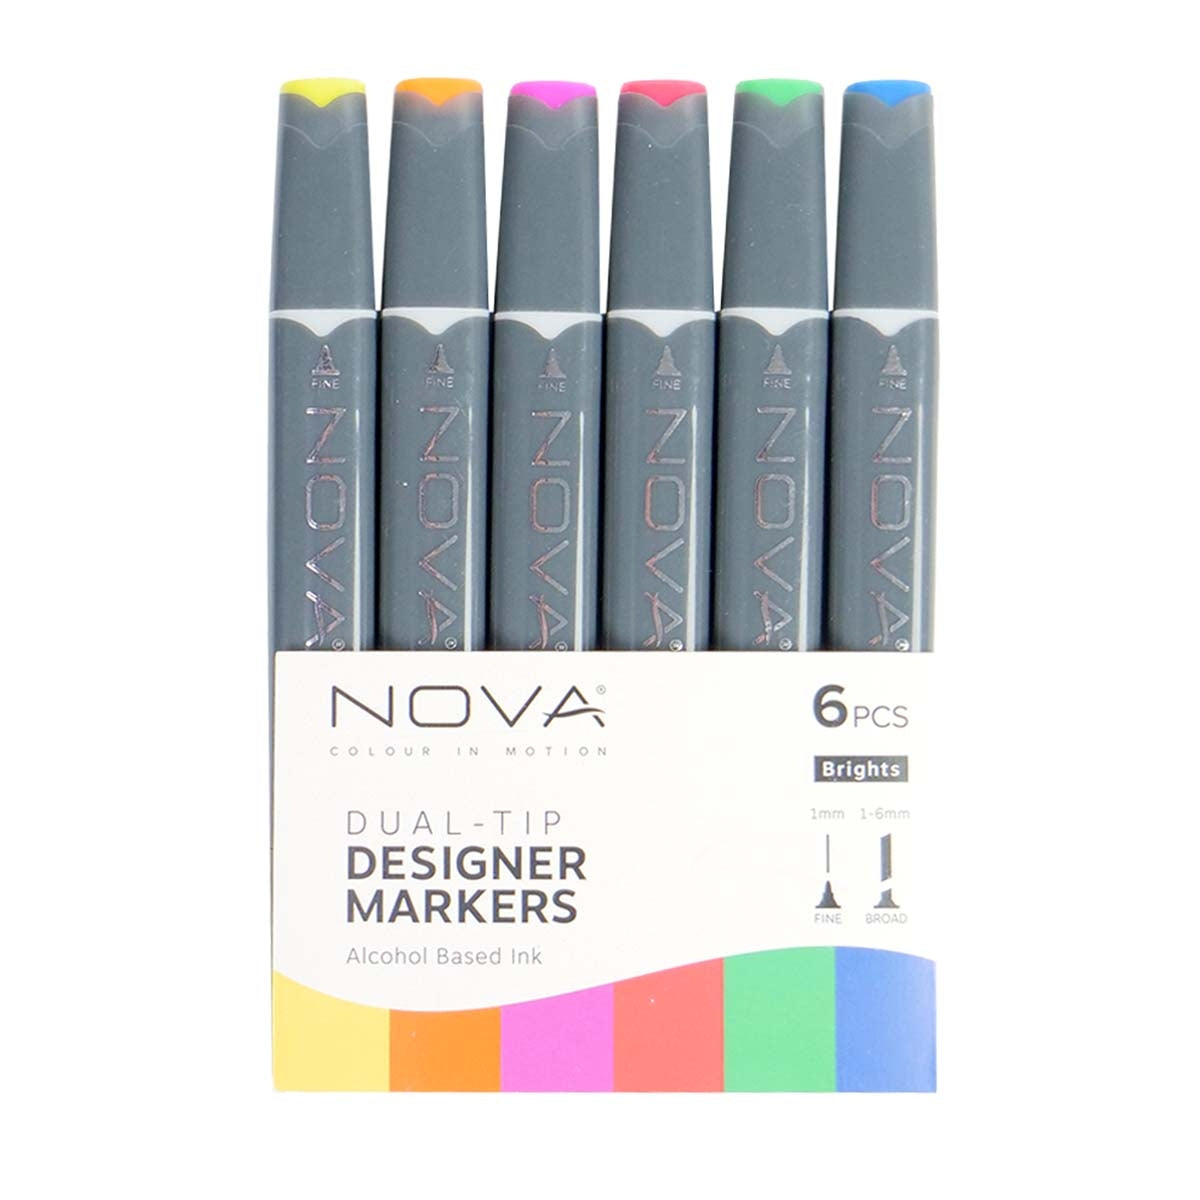 Nova - Designermarker - Dual Tipp - Alkoholbasierte - 6 Pack - Regenbogen